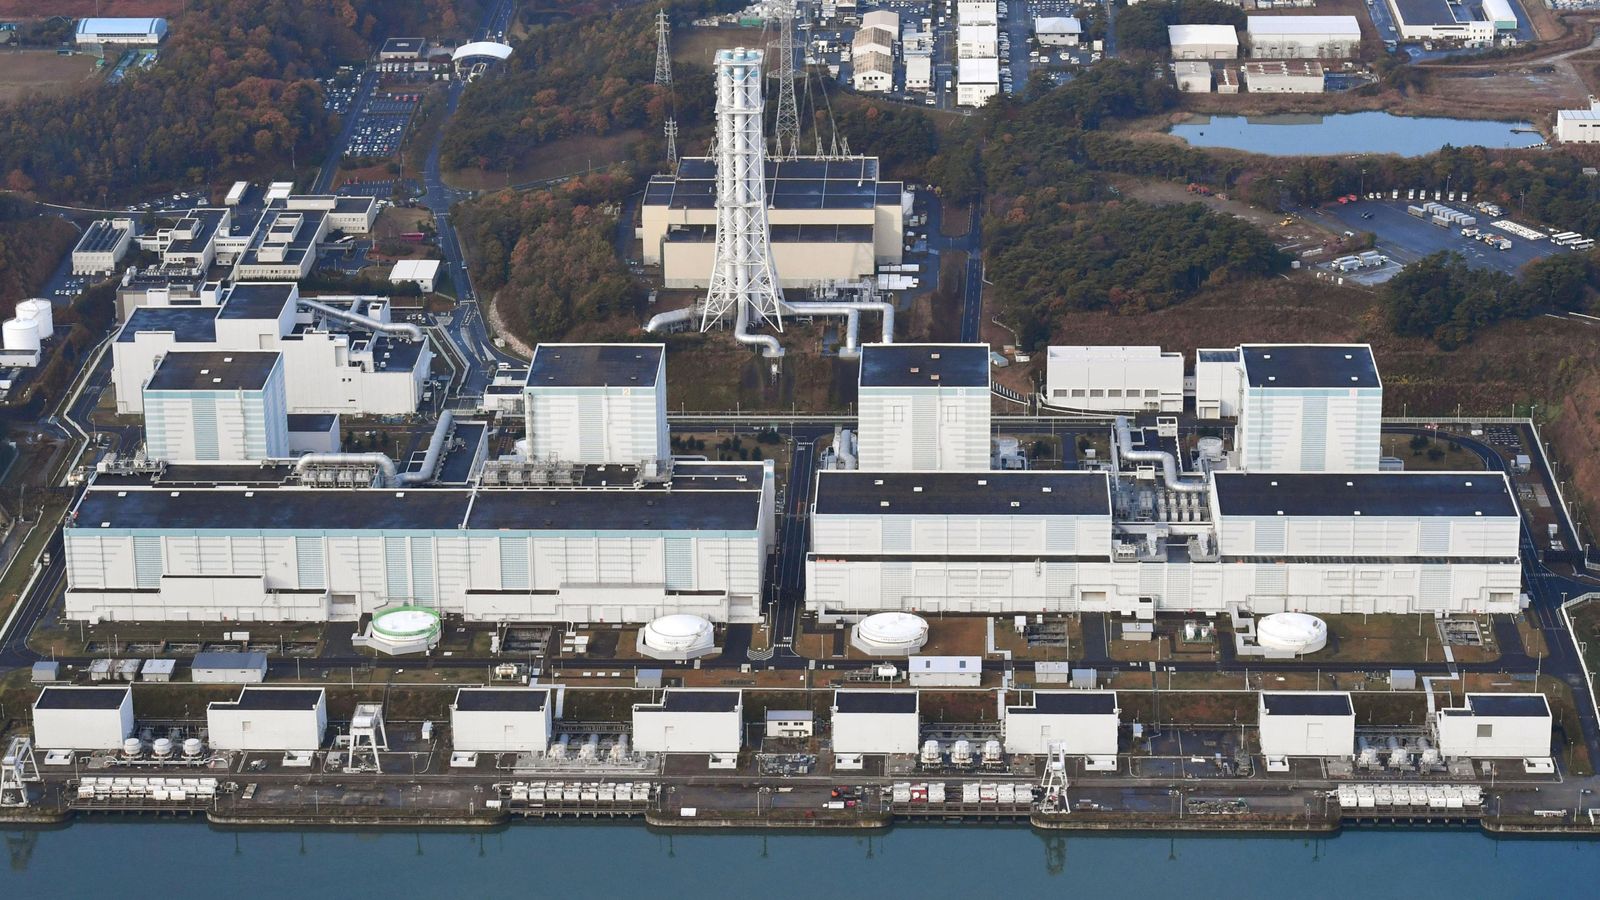 Fukushima reactor hit by 2011 tsunami shows record radiation 